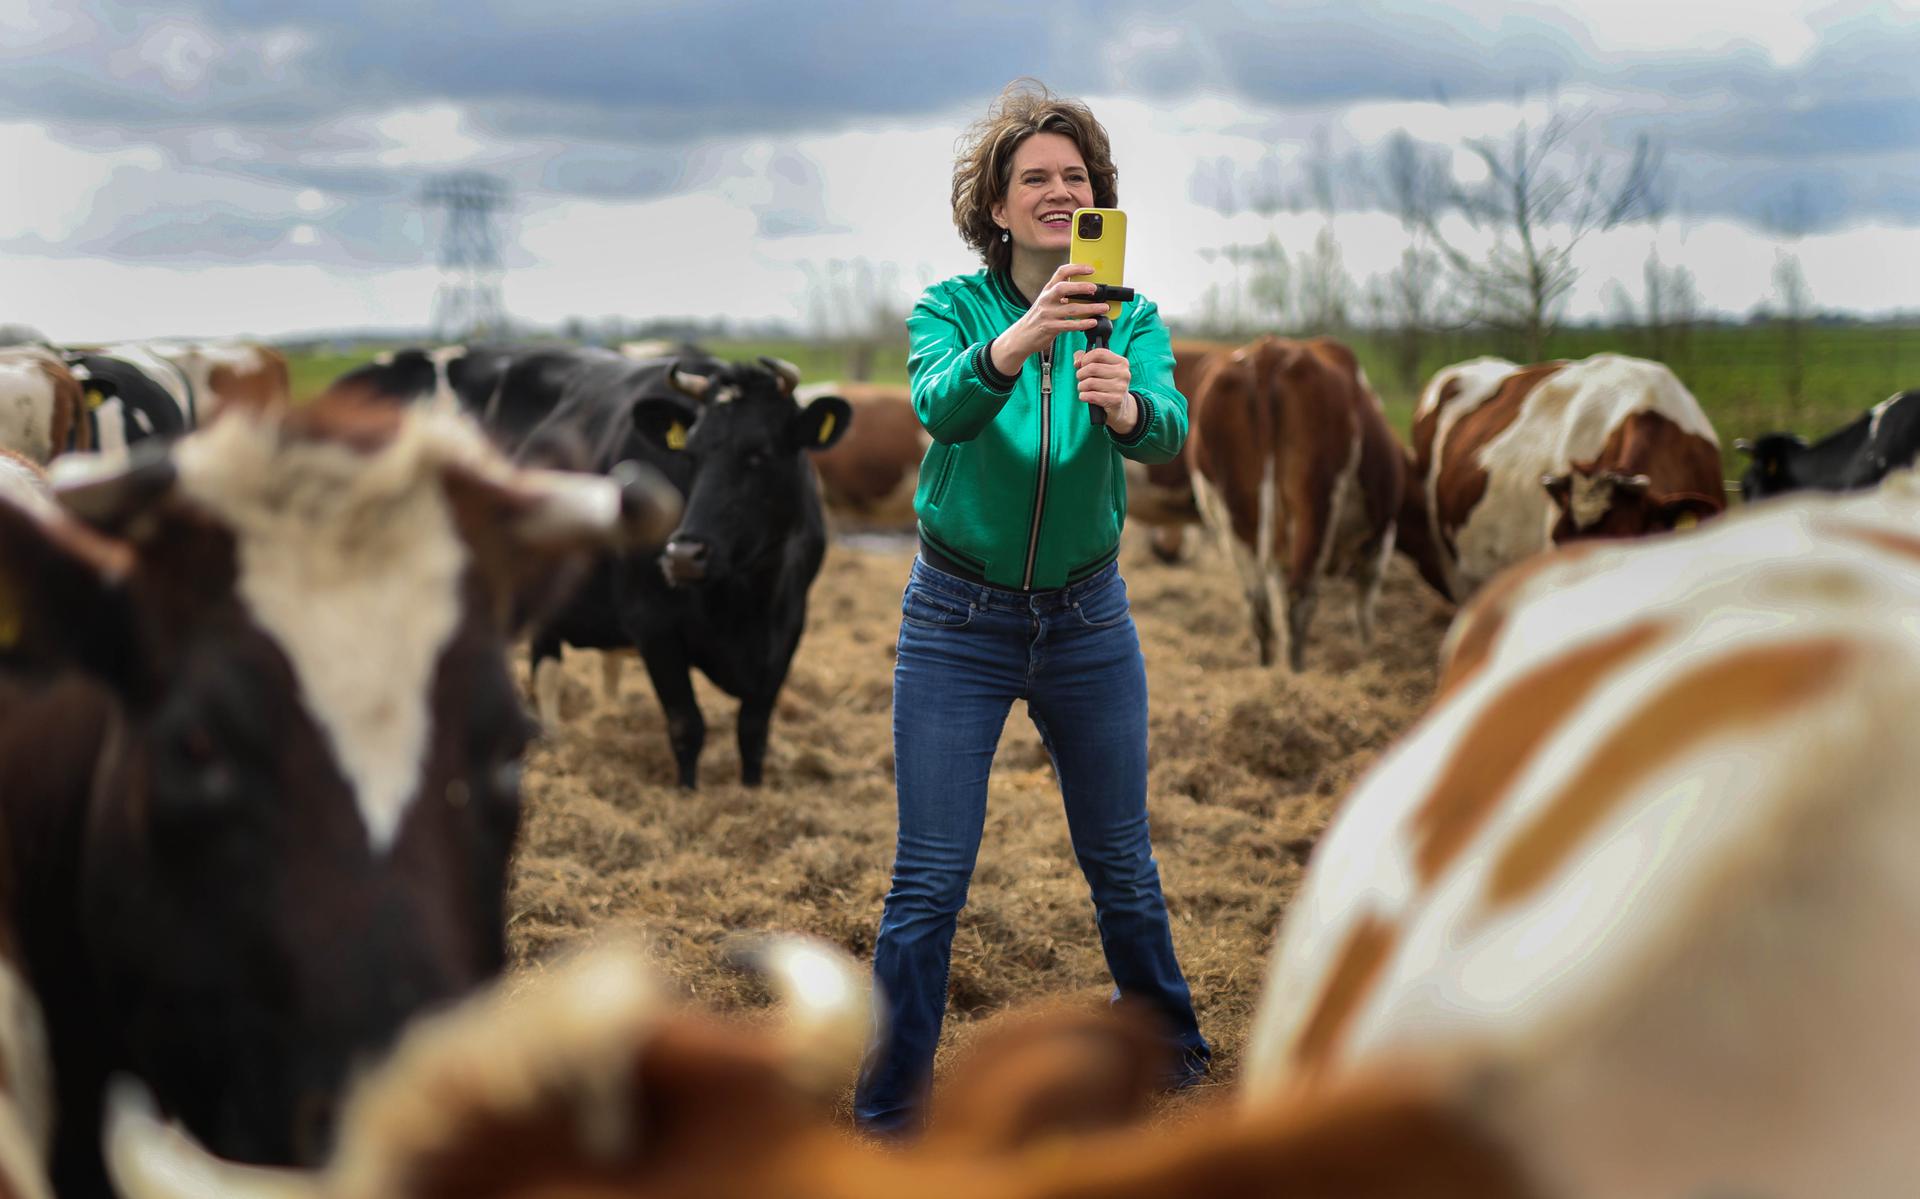 Geertje Algera dari Workum adalah pionir dalam fotografi ponsel pintar.  “Saya belajar menangani berbagai hal di pertanian.”